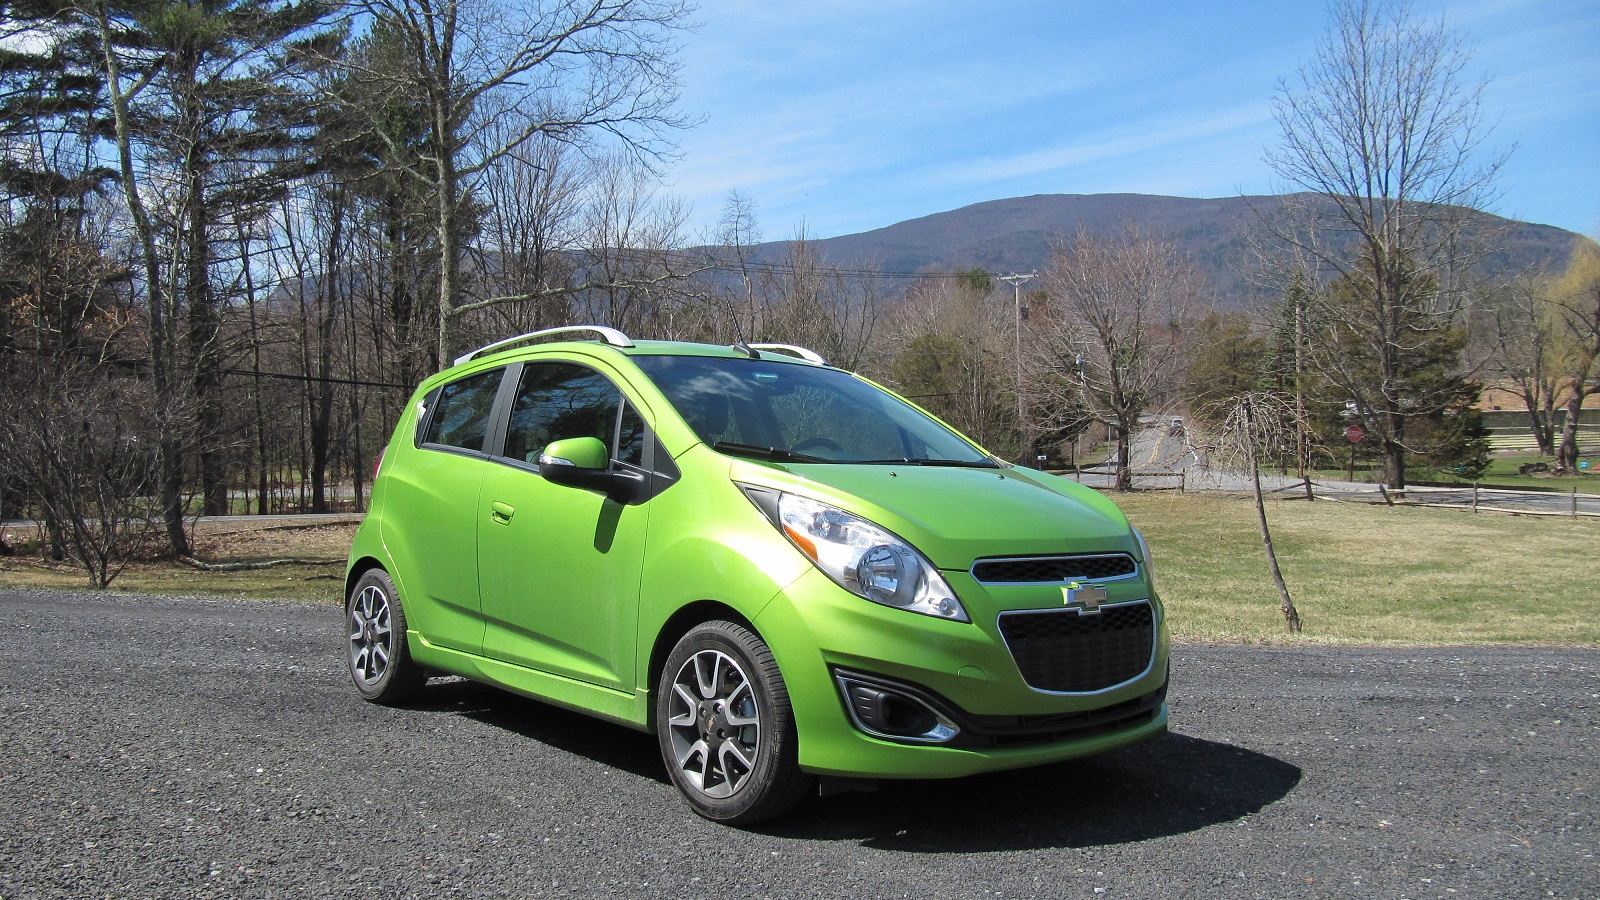 2014 Chevrolet Spark, Catskill Mountains, Apr 2014